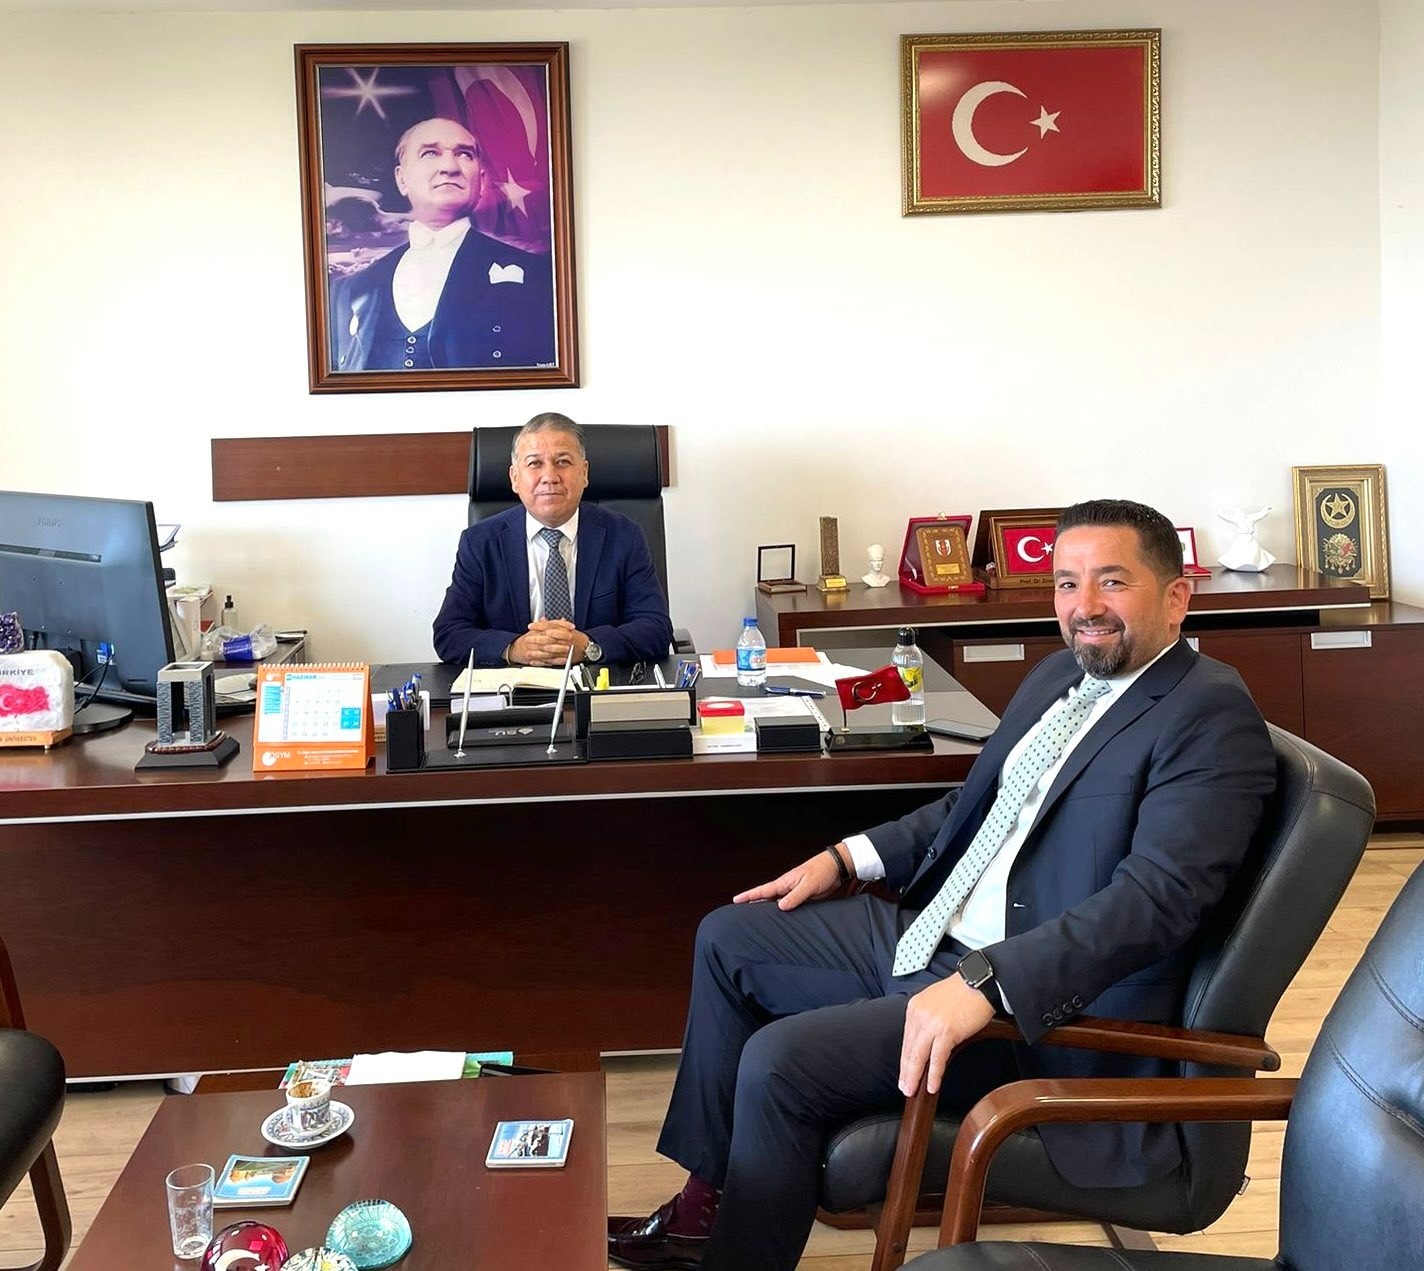 Mersin Teknopark Yönetim kurulu paydaşlarmızdan Mersin Üniversitesi Rektörlüğüne Cumhurbaşkanlığı kararnamesi ile  Prof.Dr. Erol Yaşar atandı